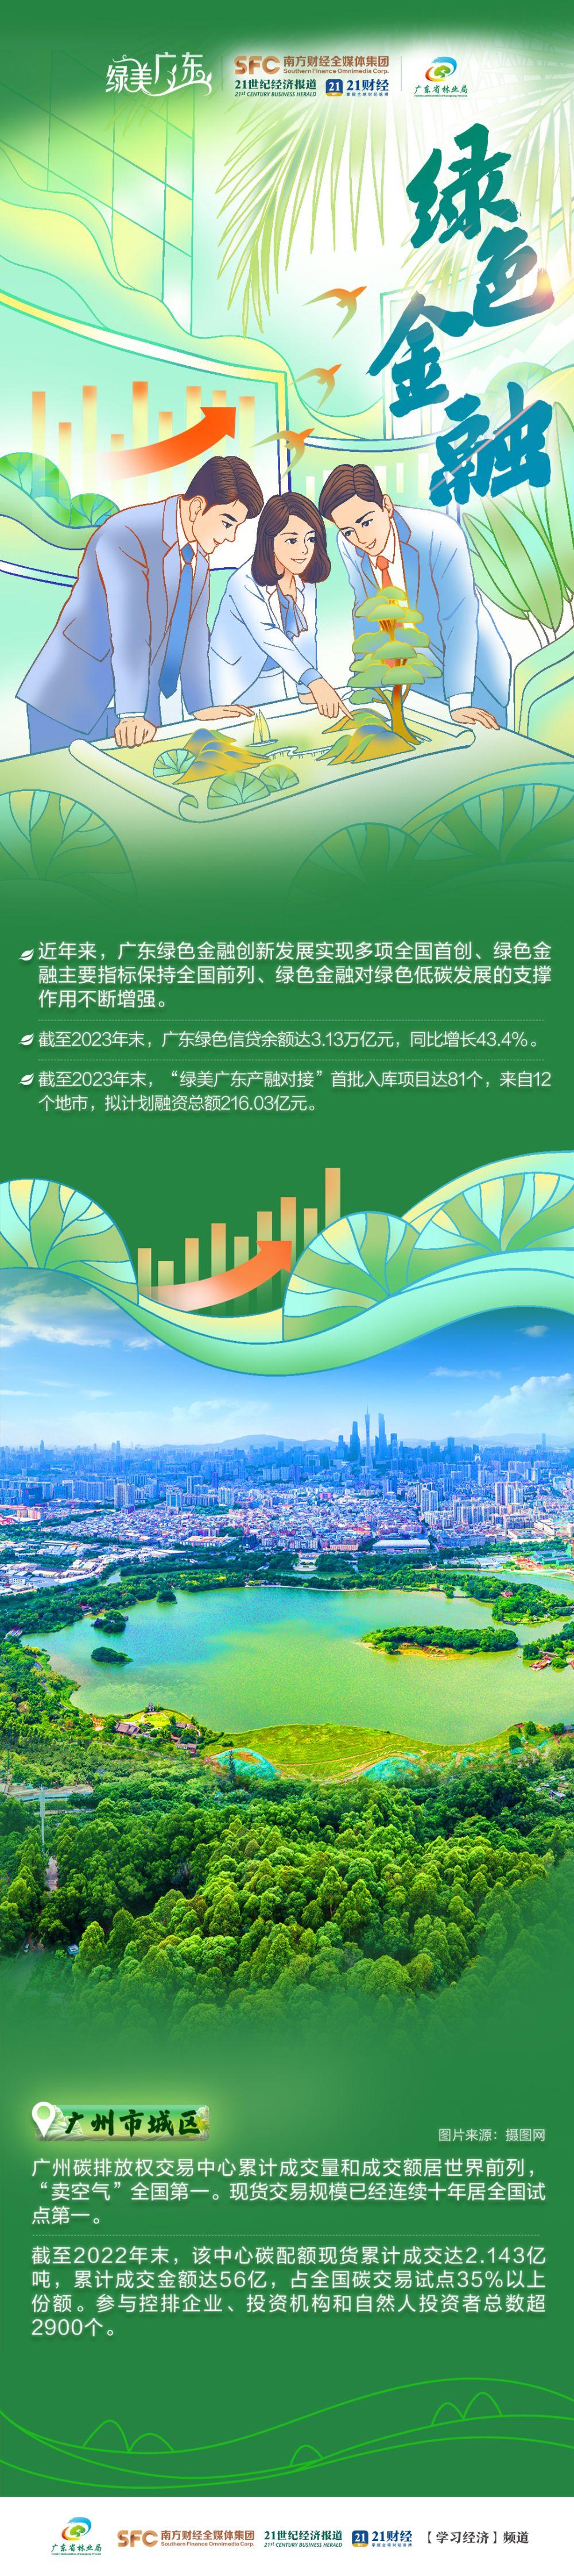 长图为绿充植一起看广东高质量发展新绿动